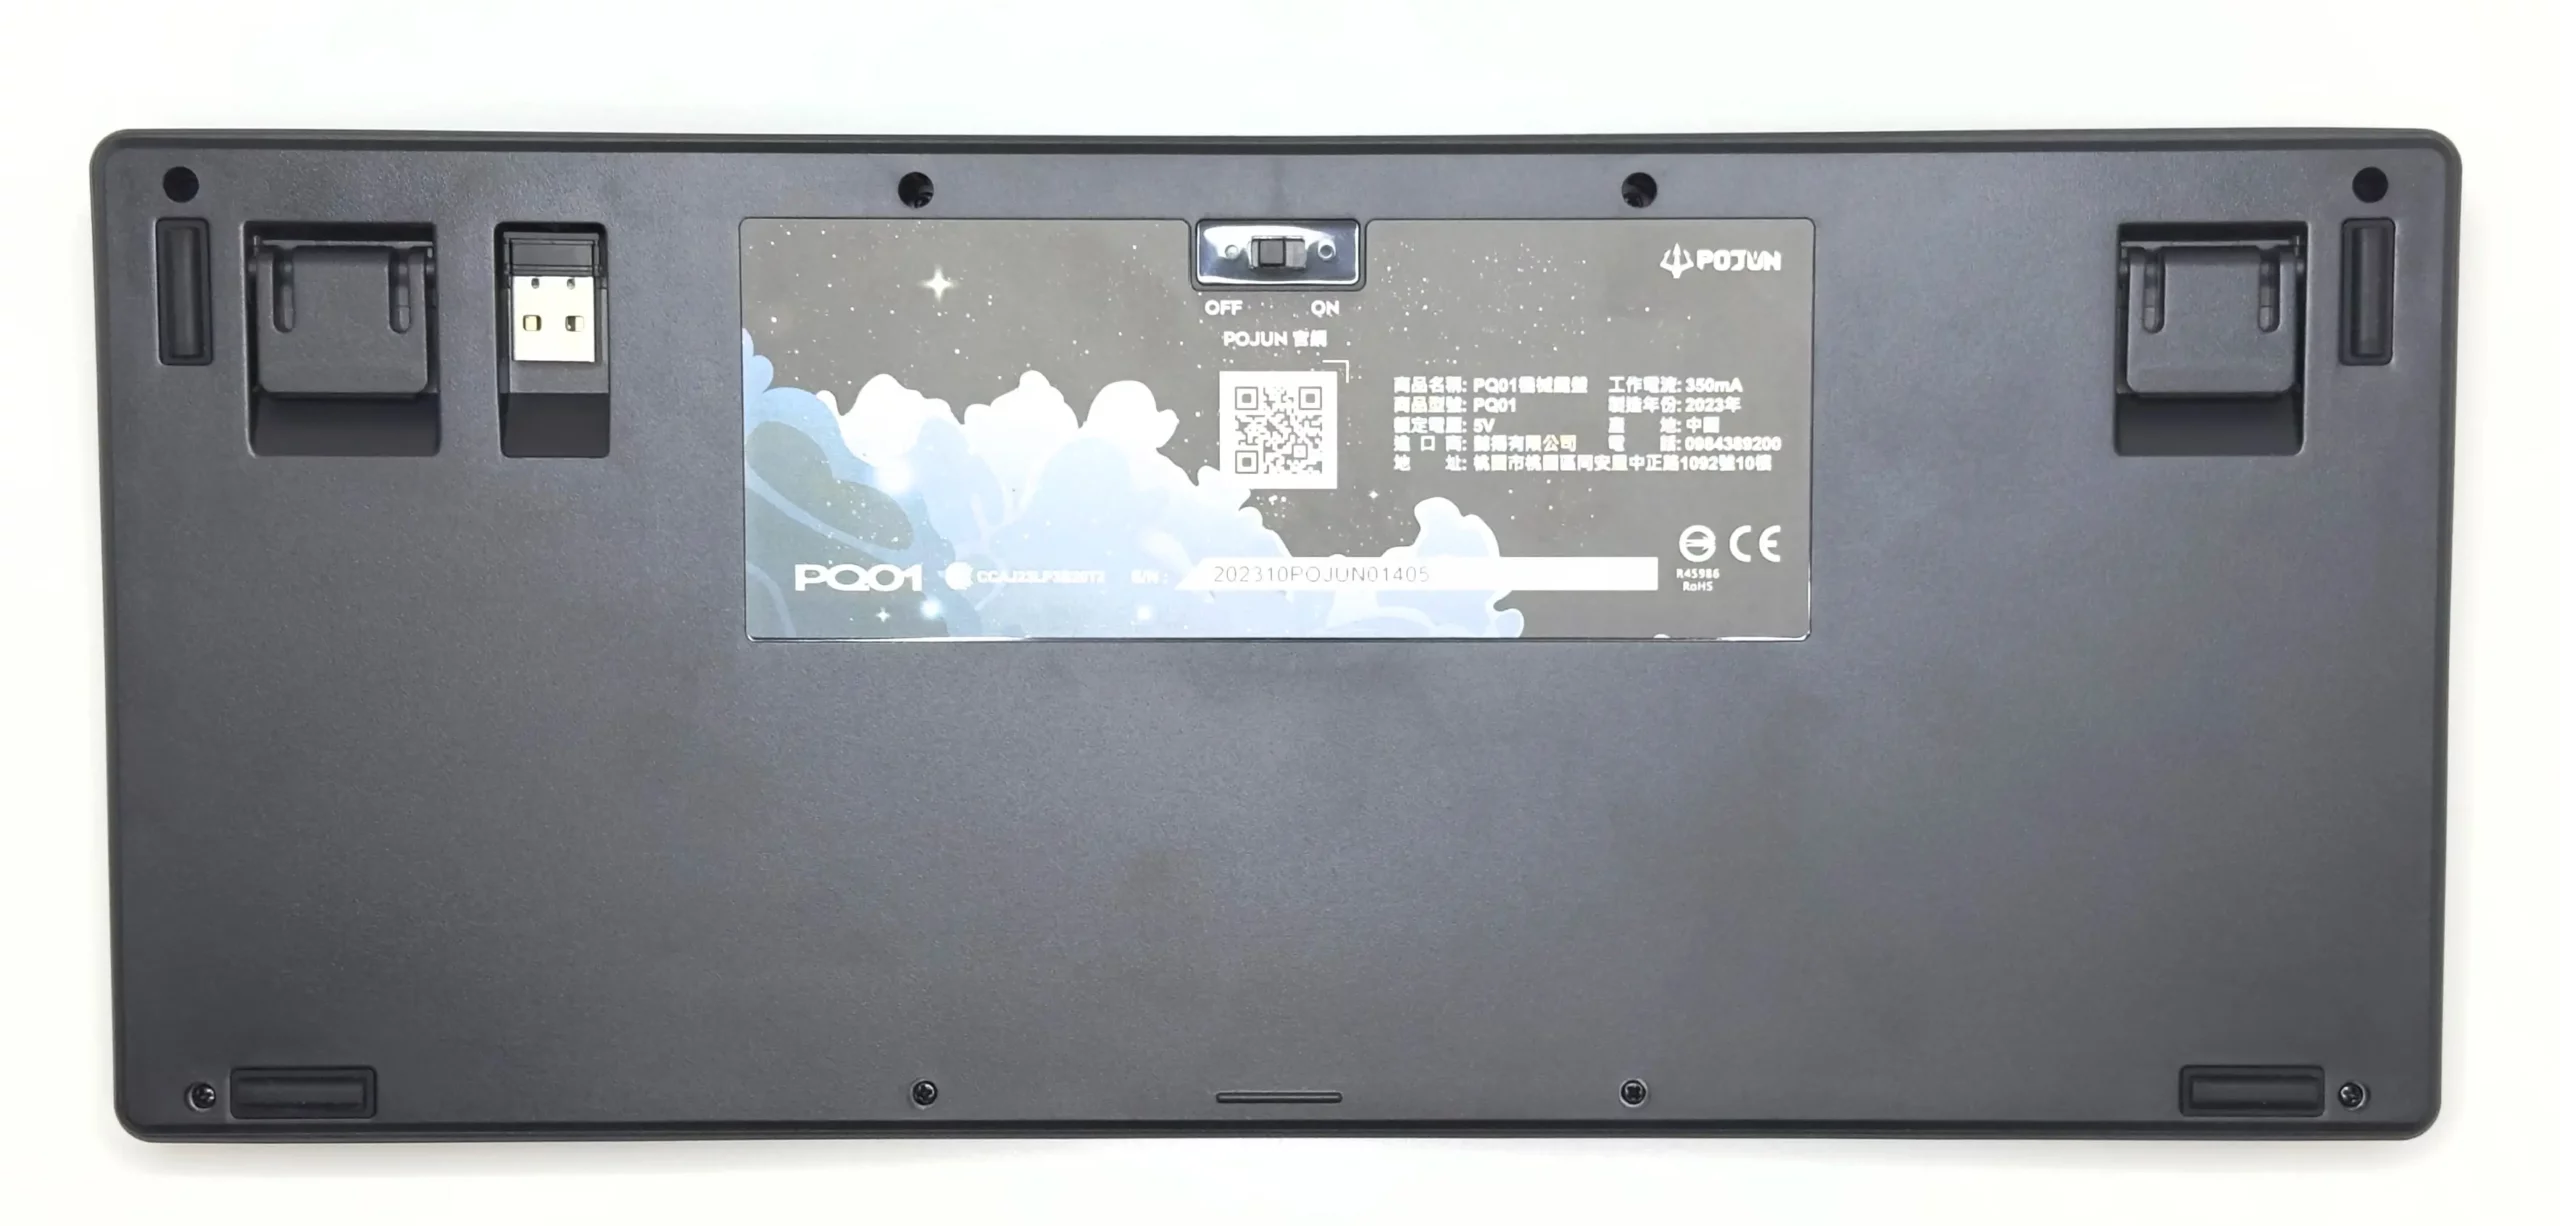 波軍 POJUN PQ01 鍵盤背面